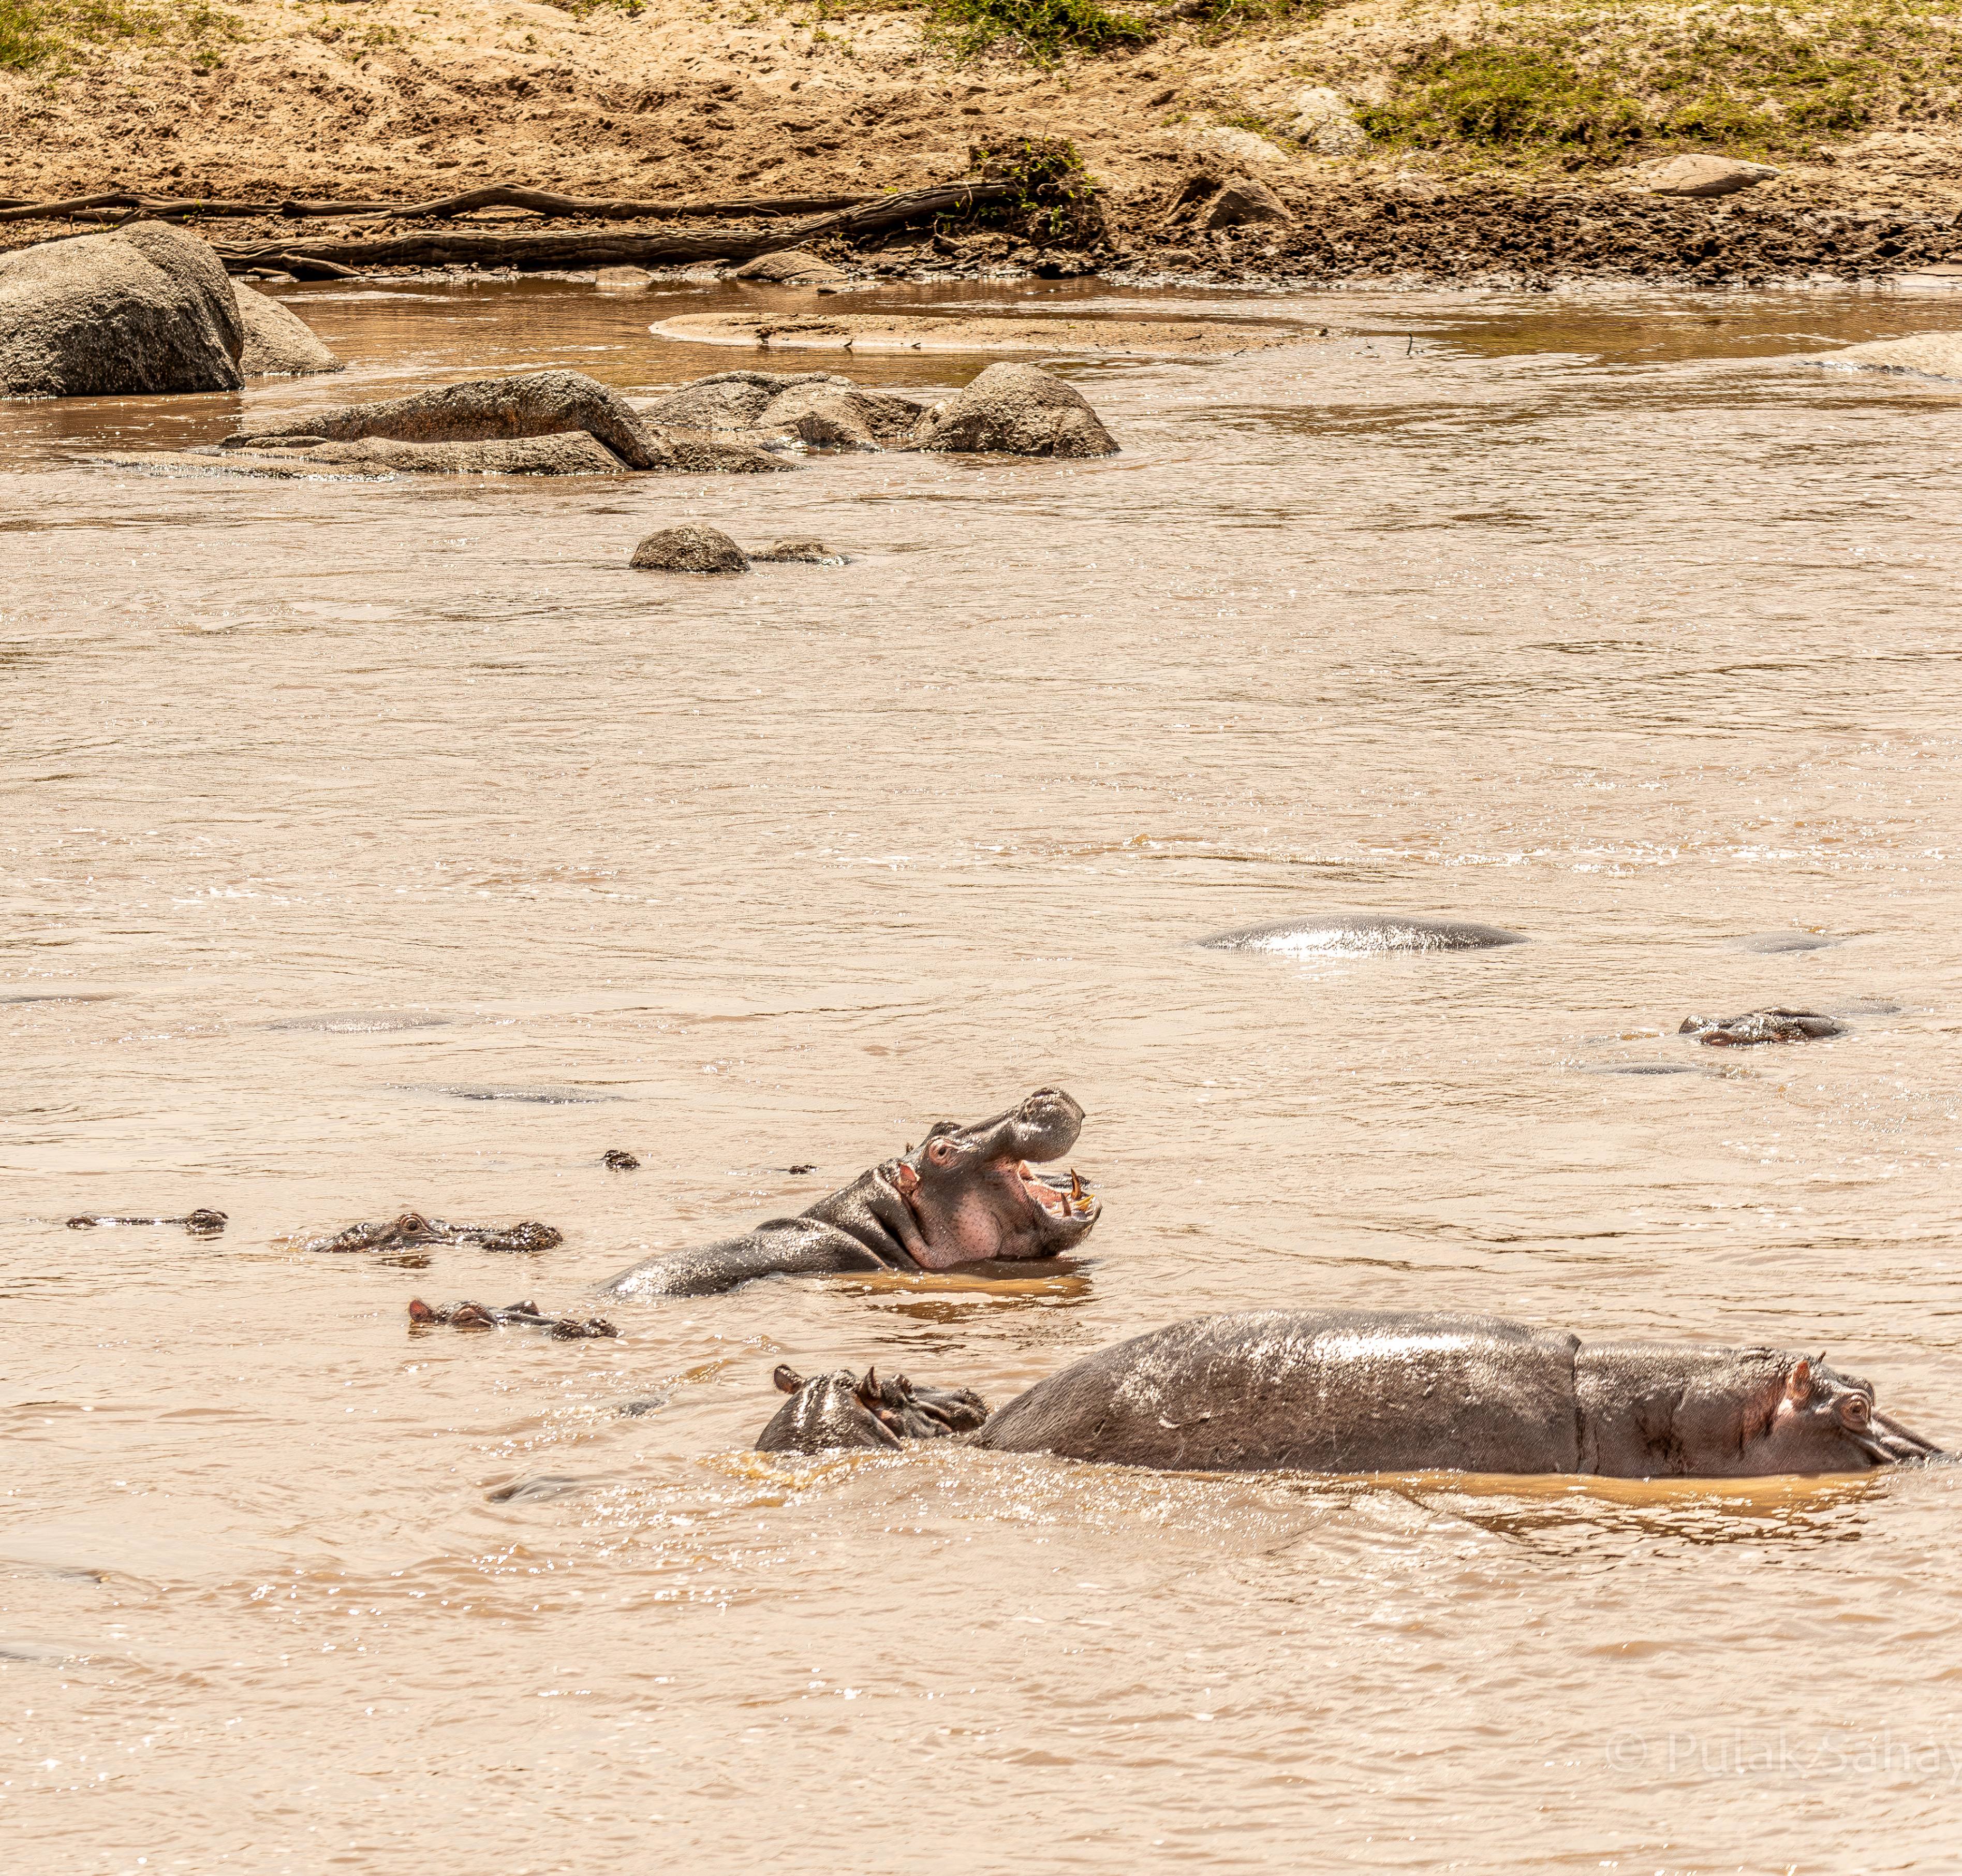 Hippos enjoying a dip